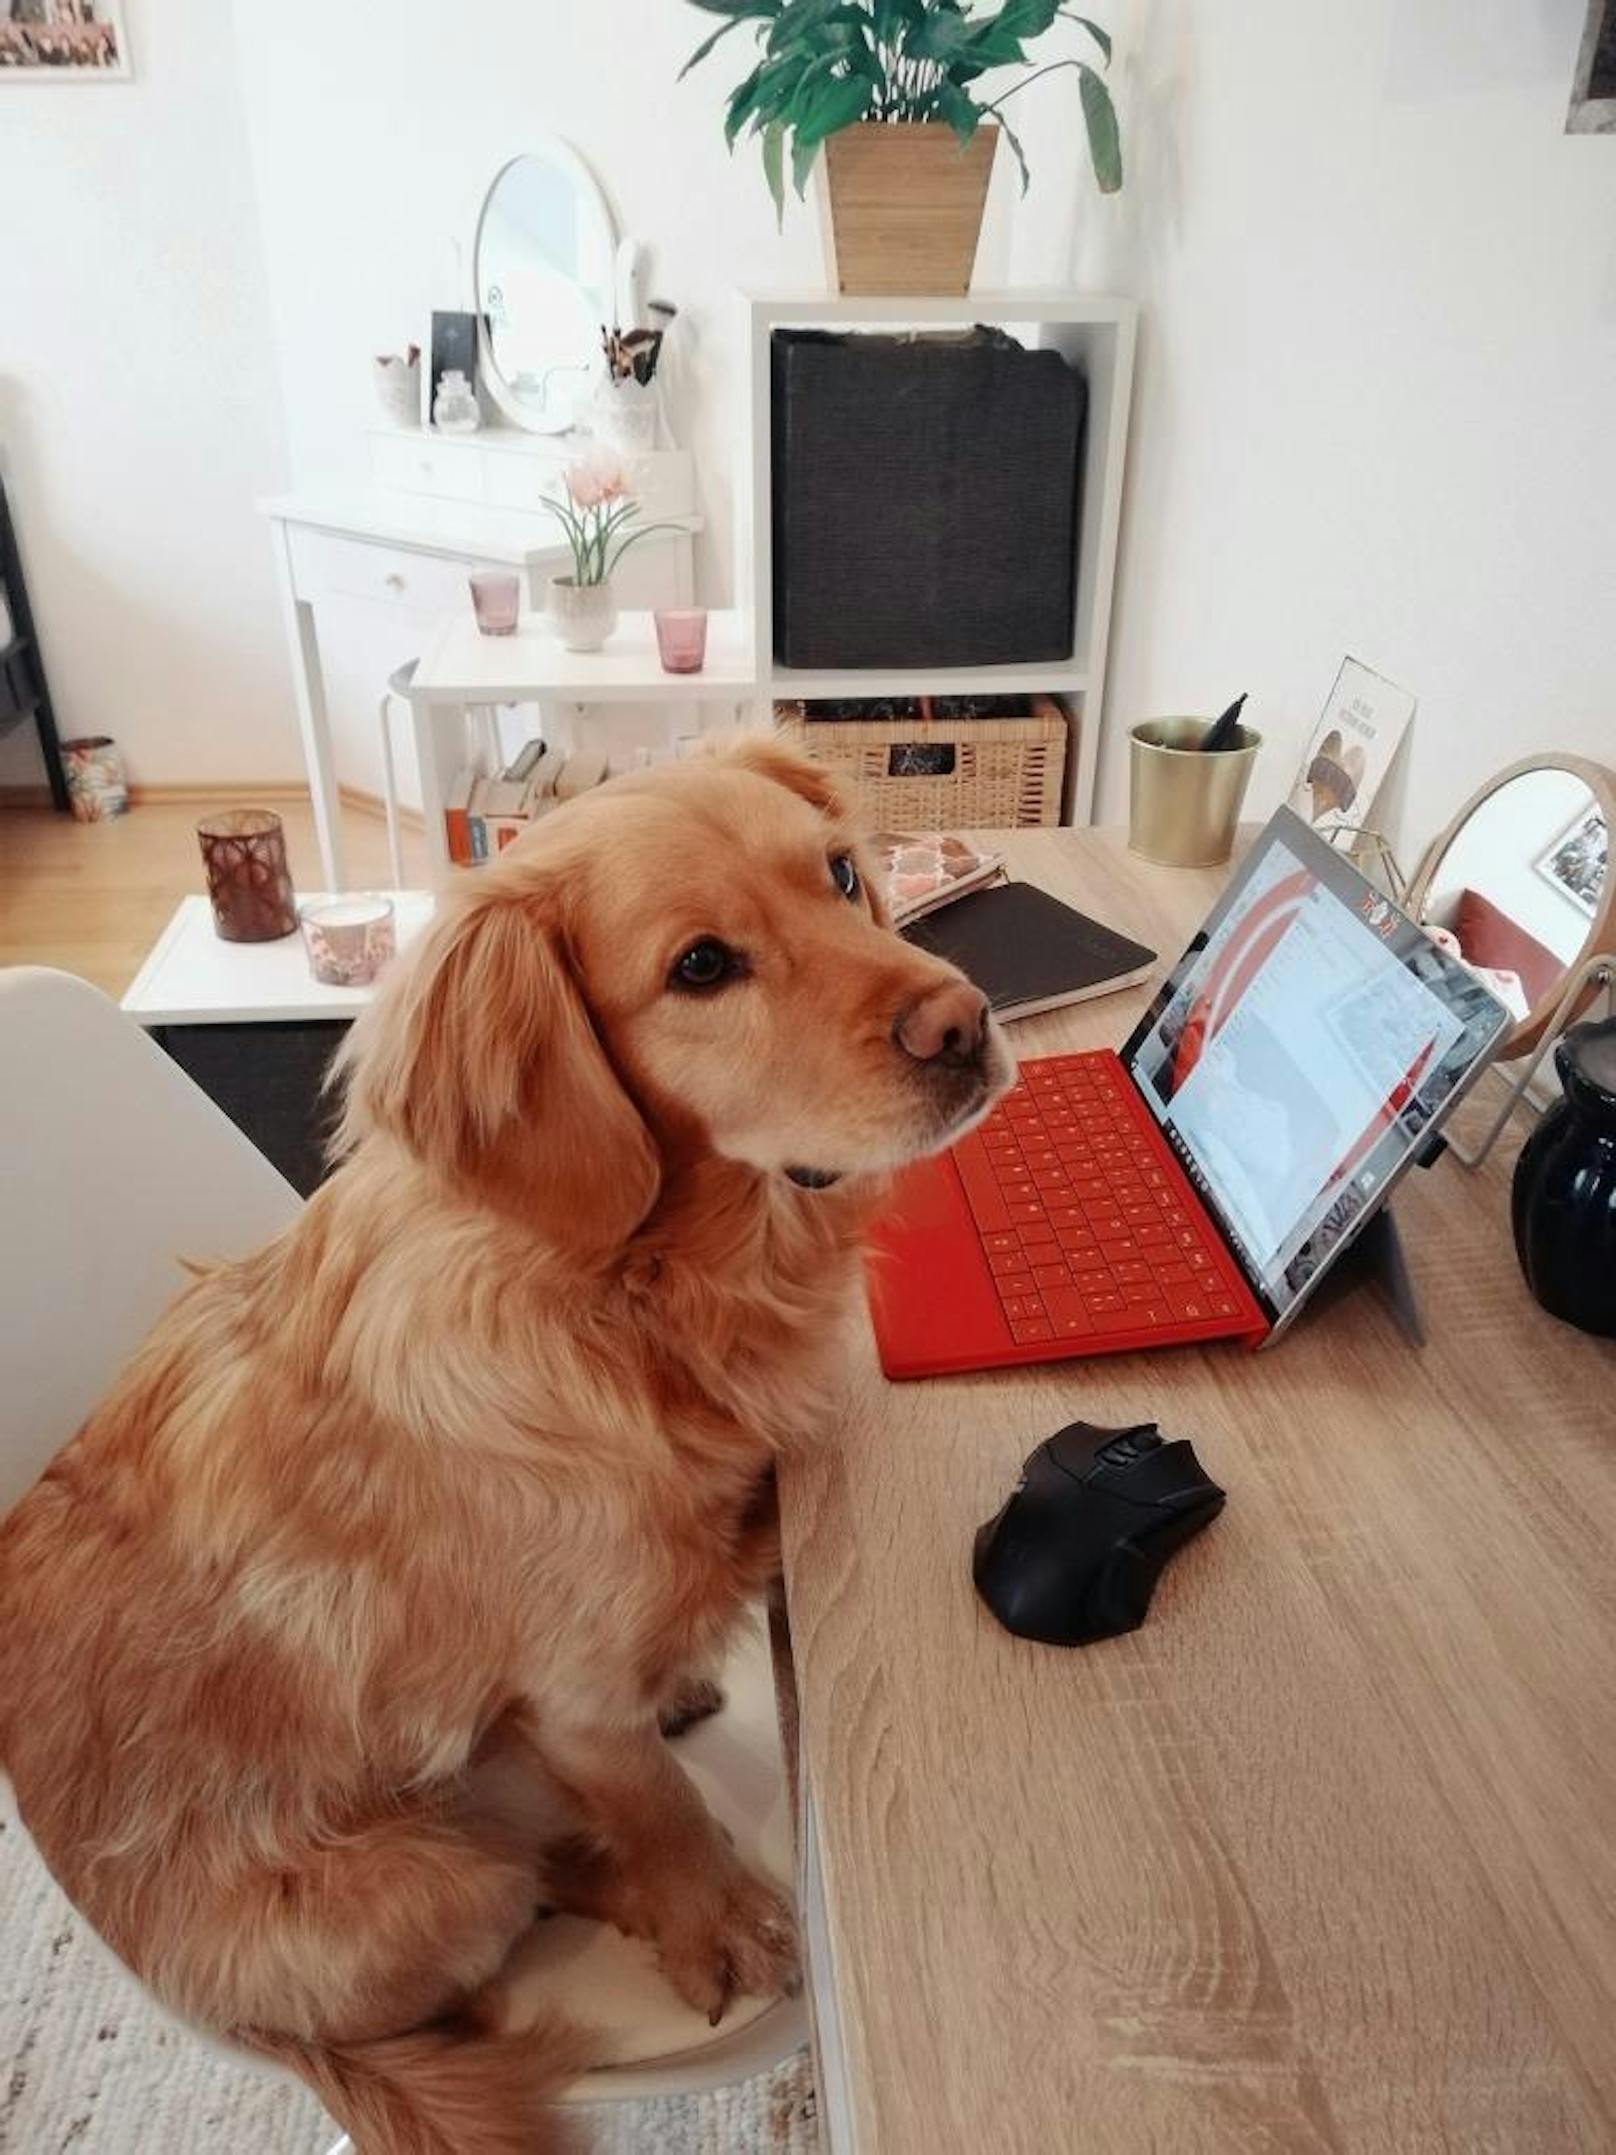 "Mein Hund Misho unterstützt mich jeden Tag beim Homeoffice!"